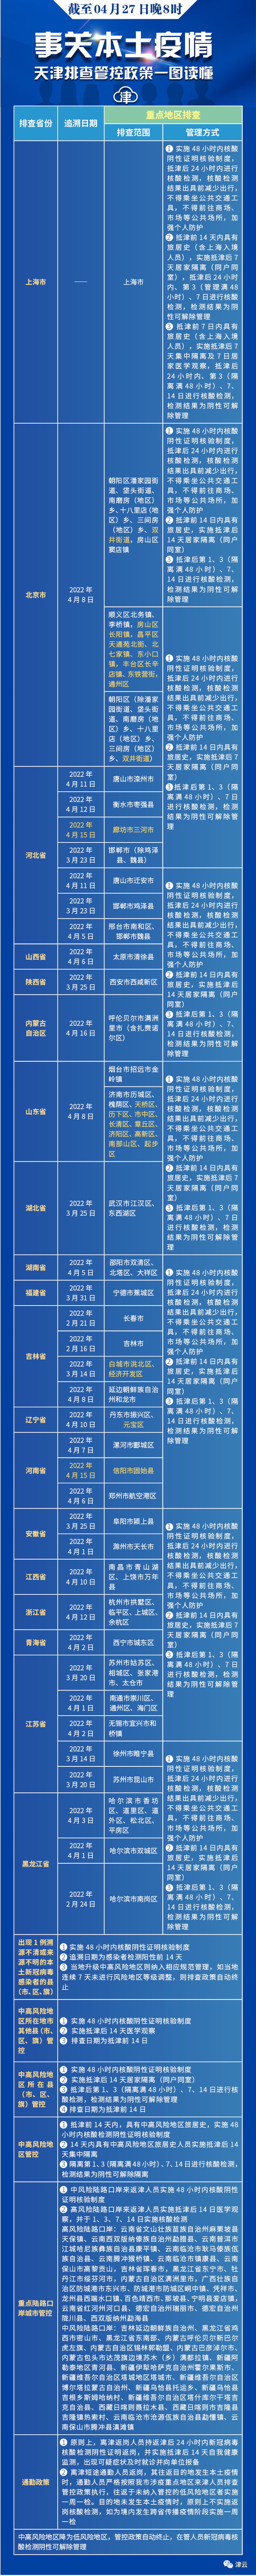 北京四個區最新通報丨一地常態化核酸檢測：每48小時一次丨天津擬推“拼車”新規丨海河遊船開航